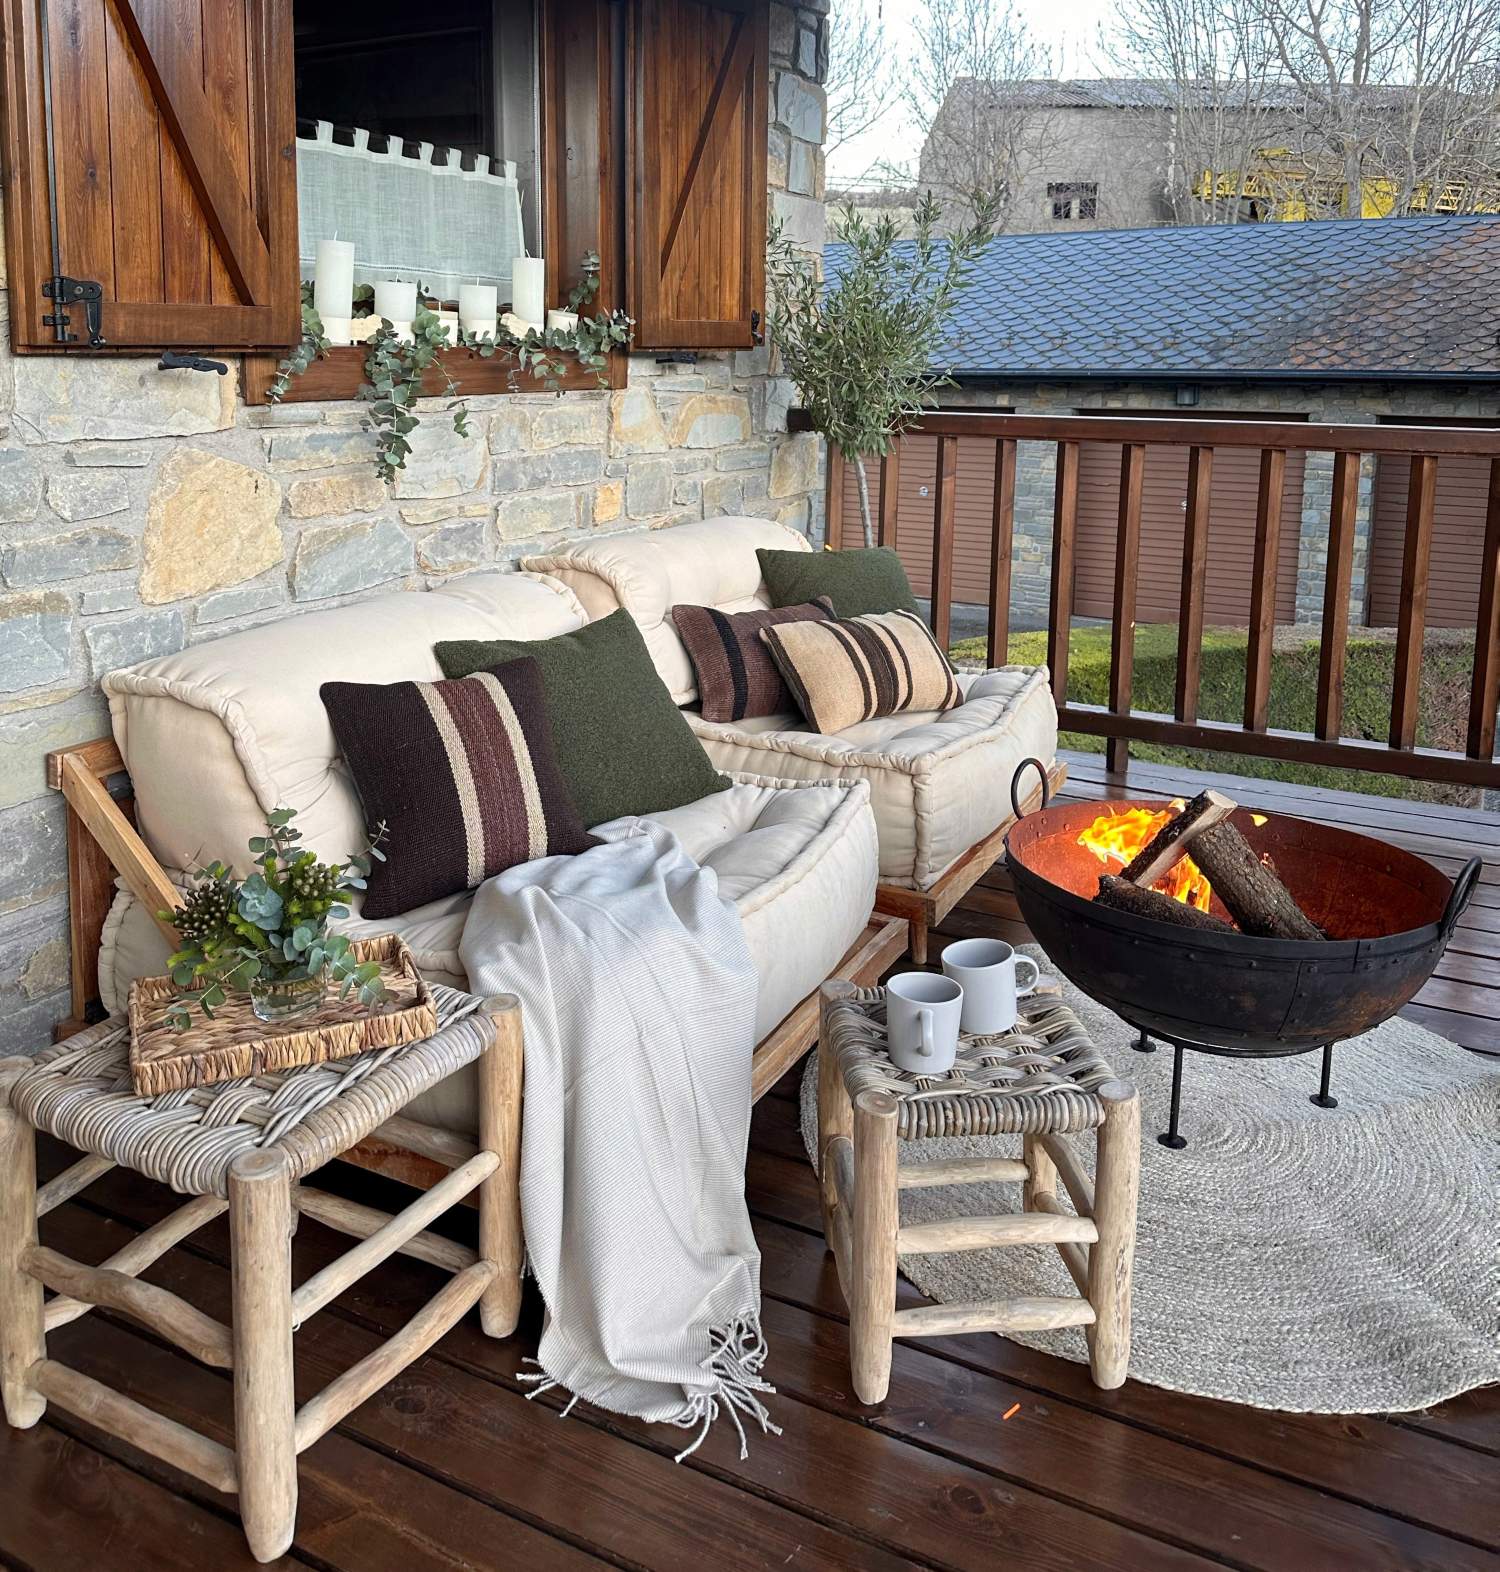 Terraza decorada con sofás en color crudo, chimenea portátil y muebles de madera.